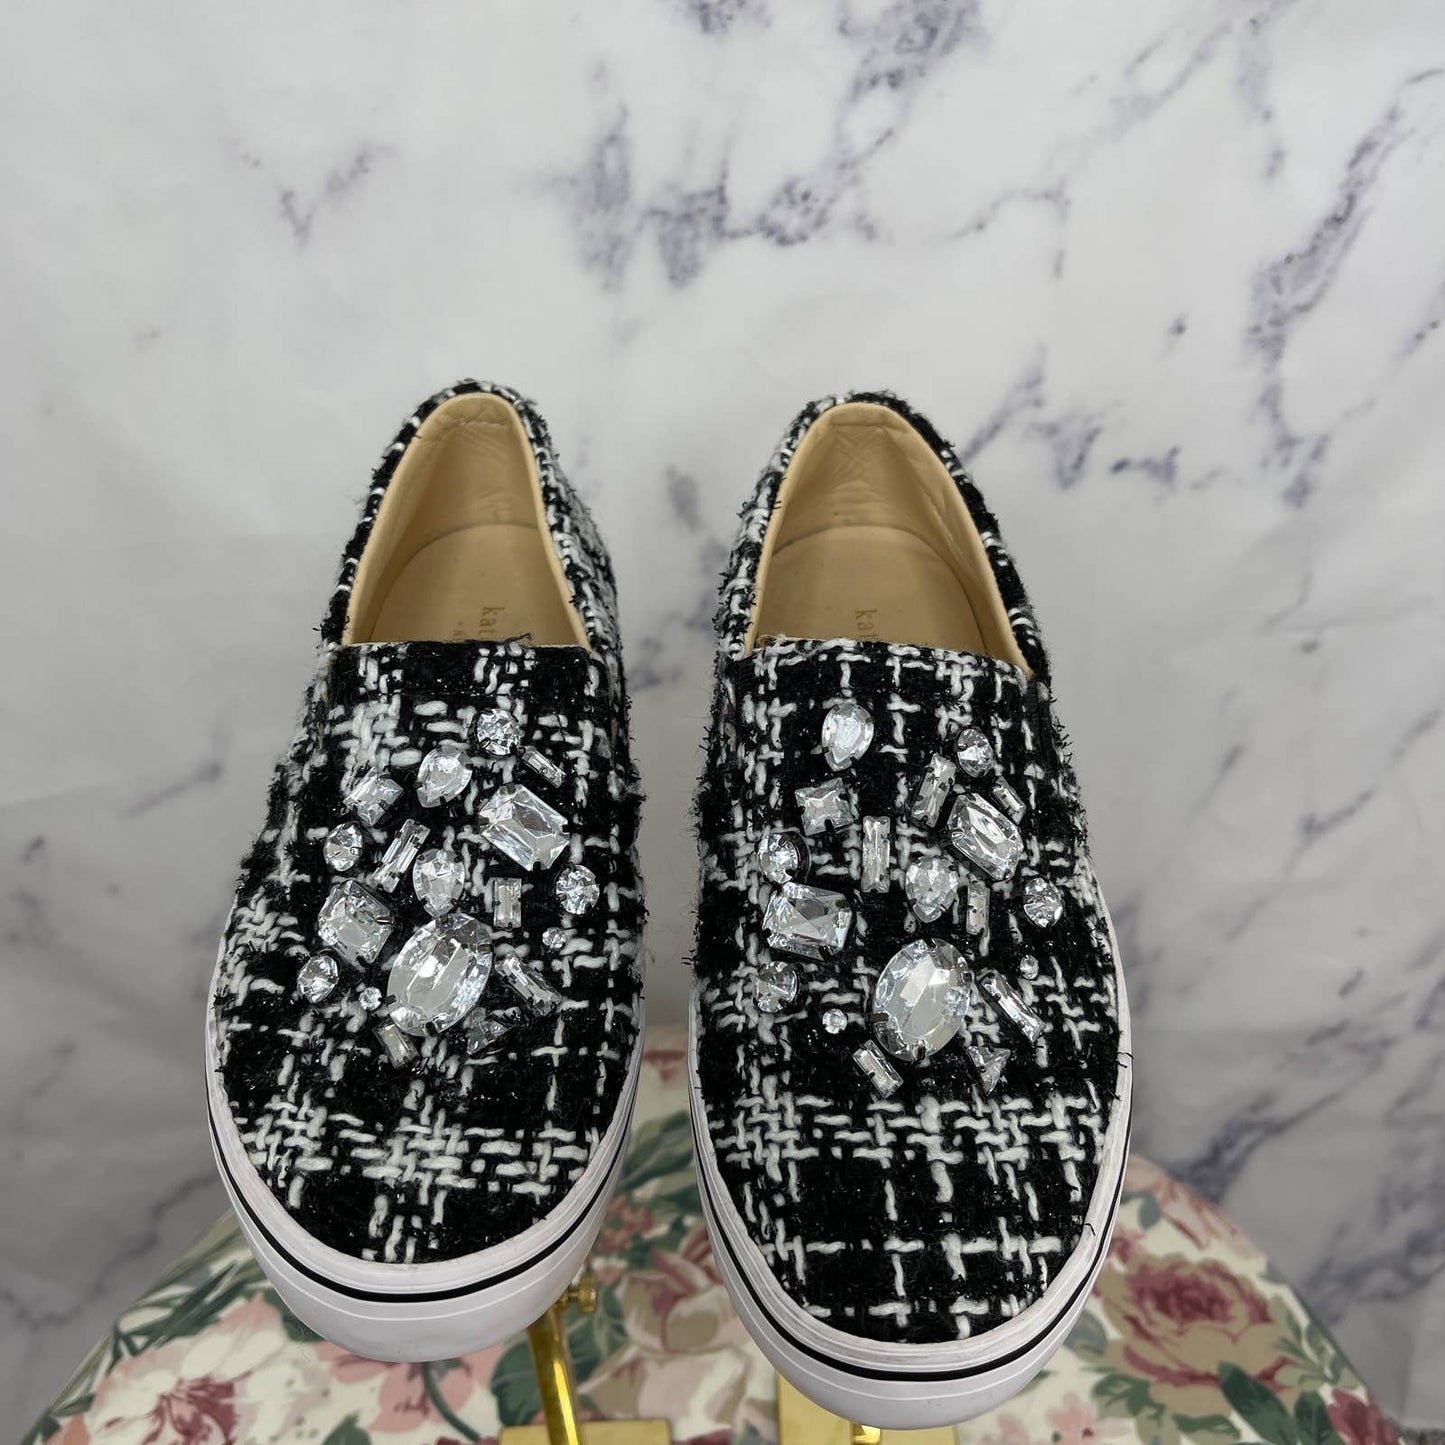 Kate Spade | Tweed Jeweled Slip-On Sneakers | Size 7